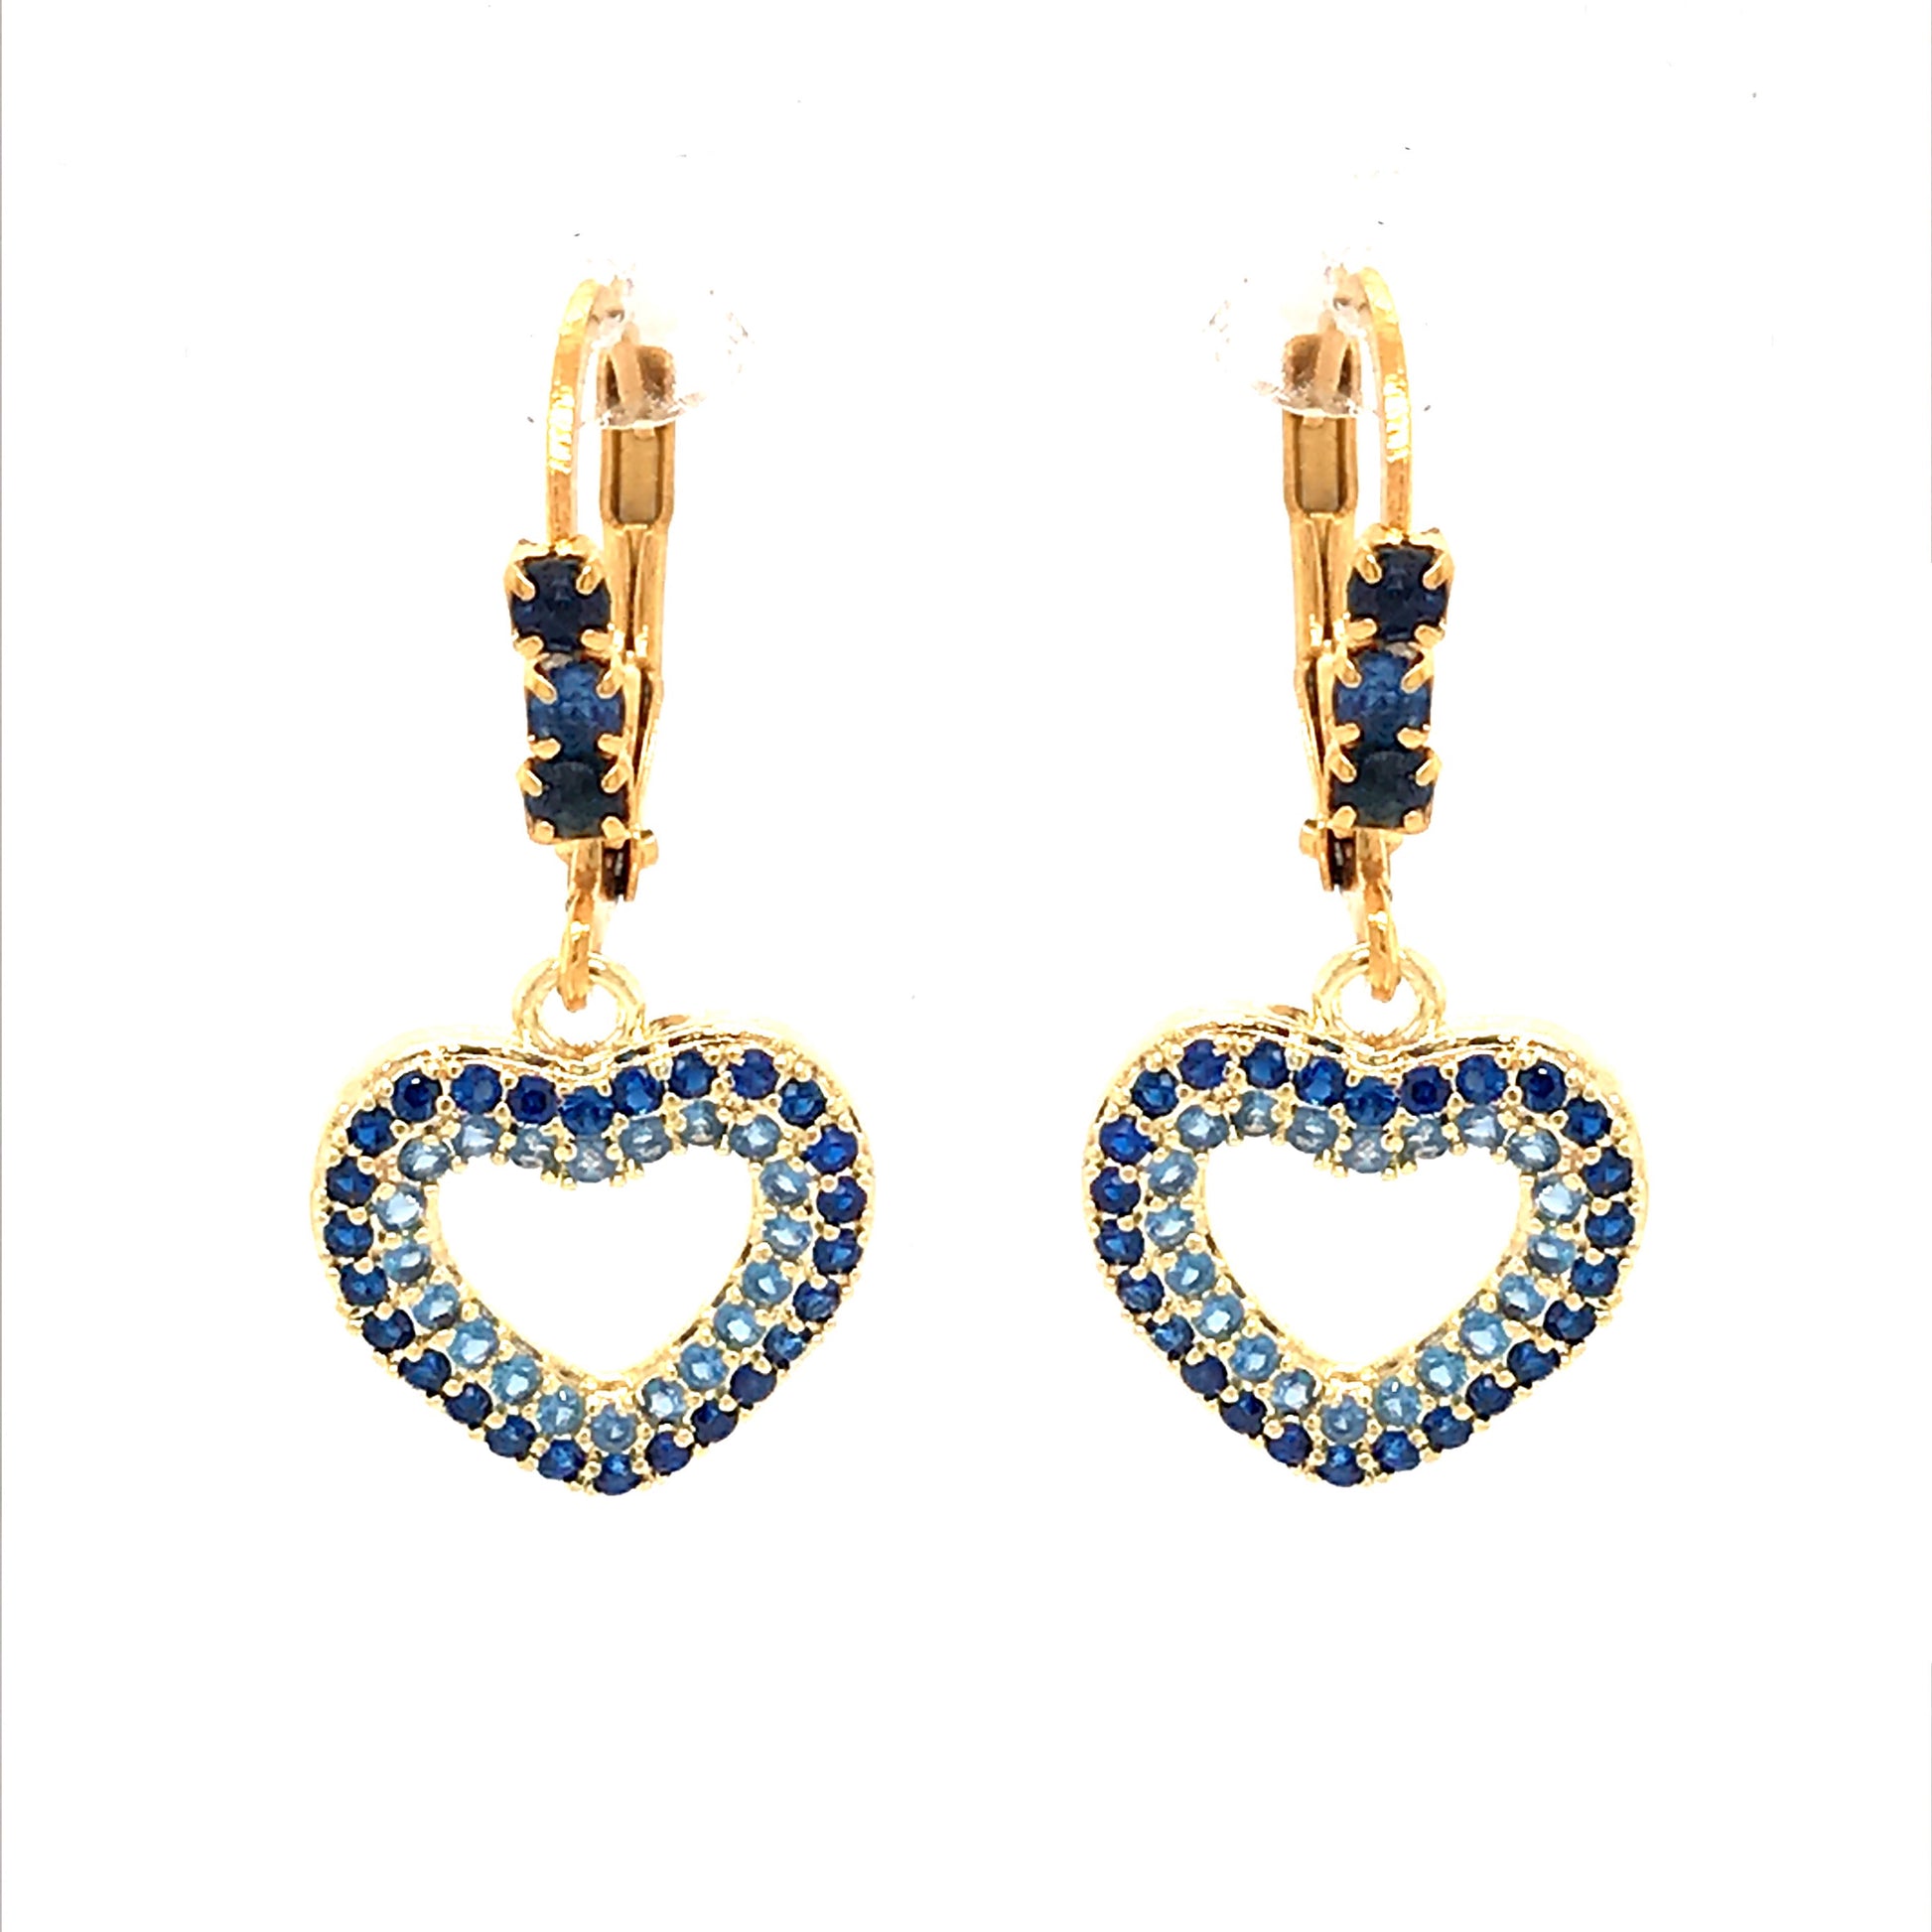 Surgical Steel Blue Heart Earrings - HK Jewels